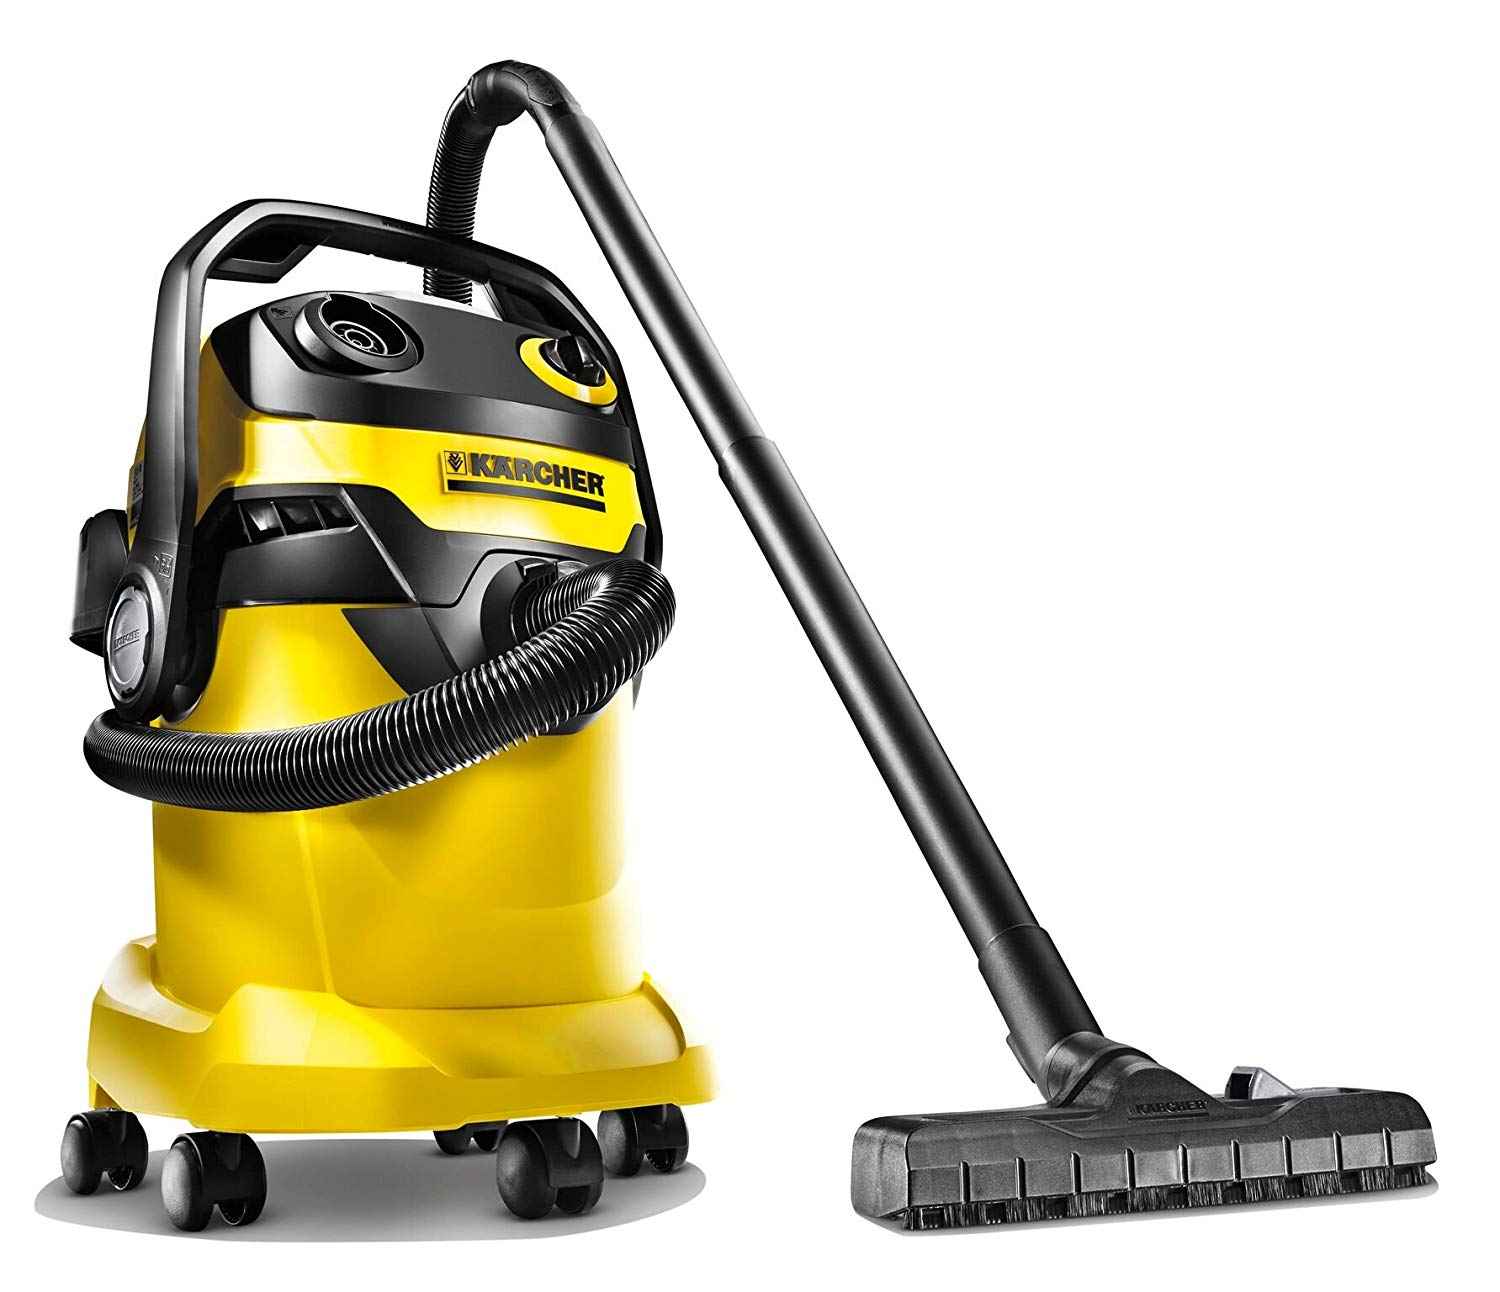 vacuum cleaner online price